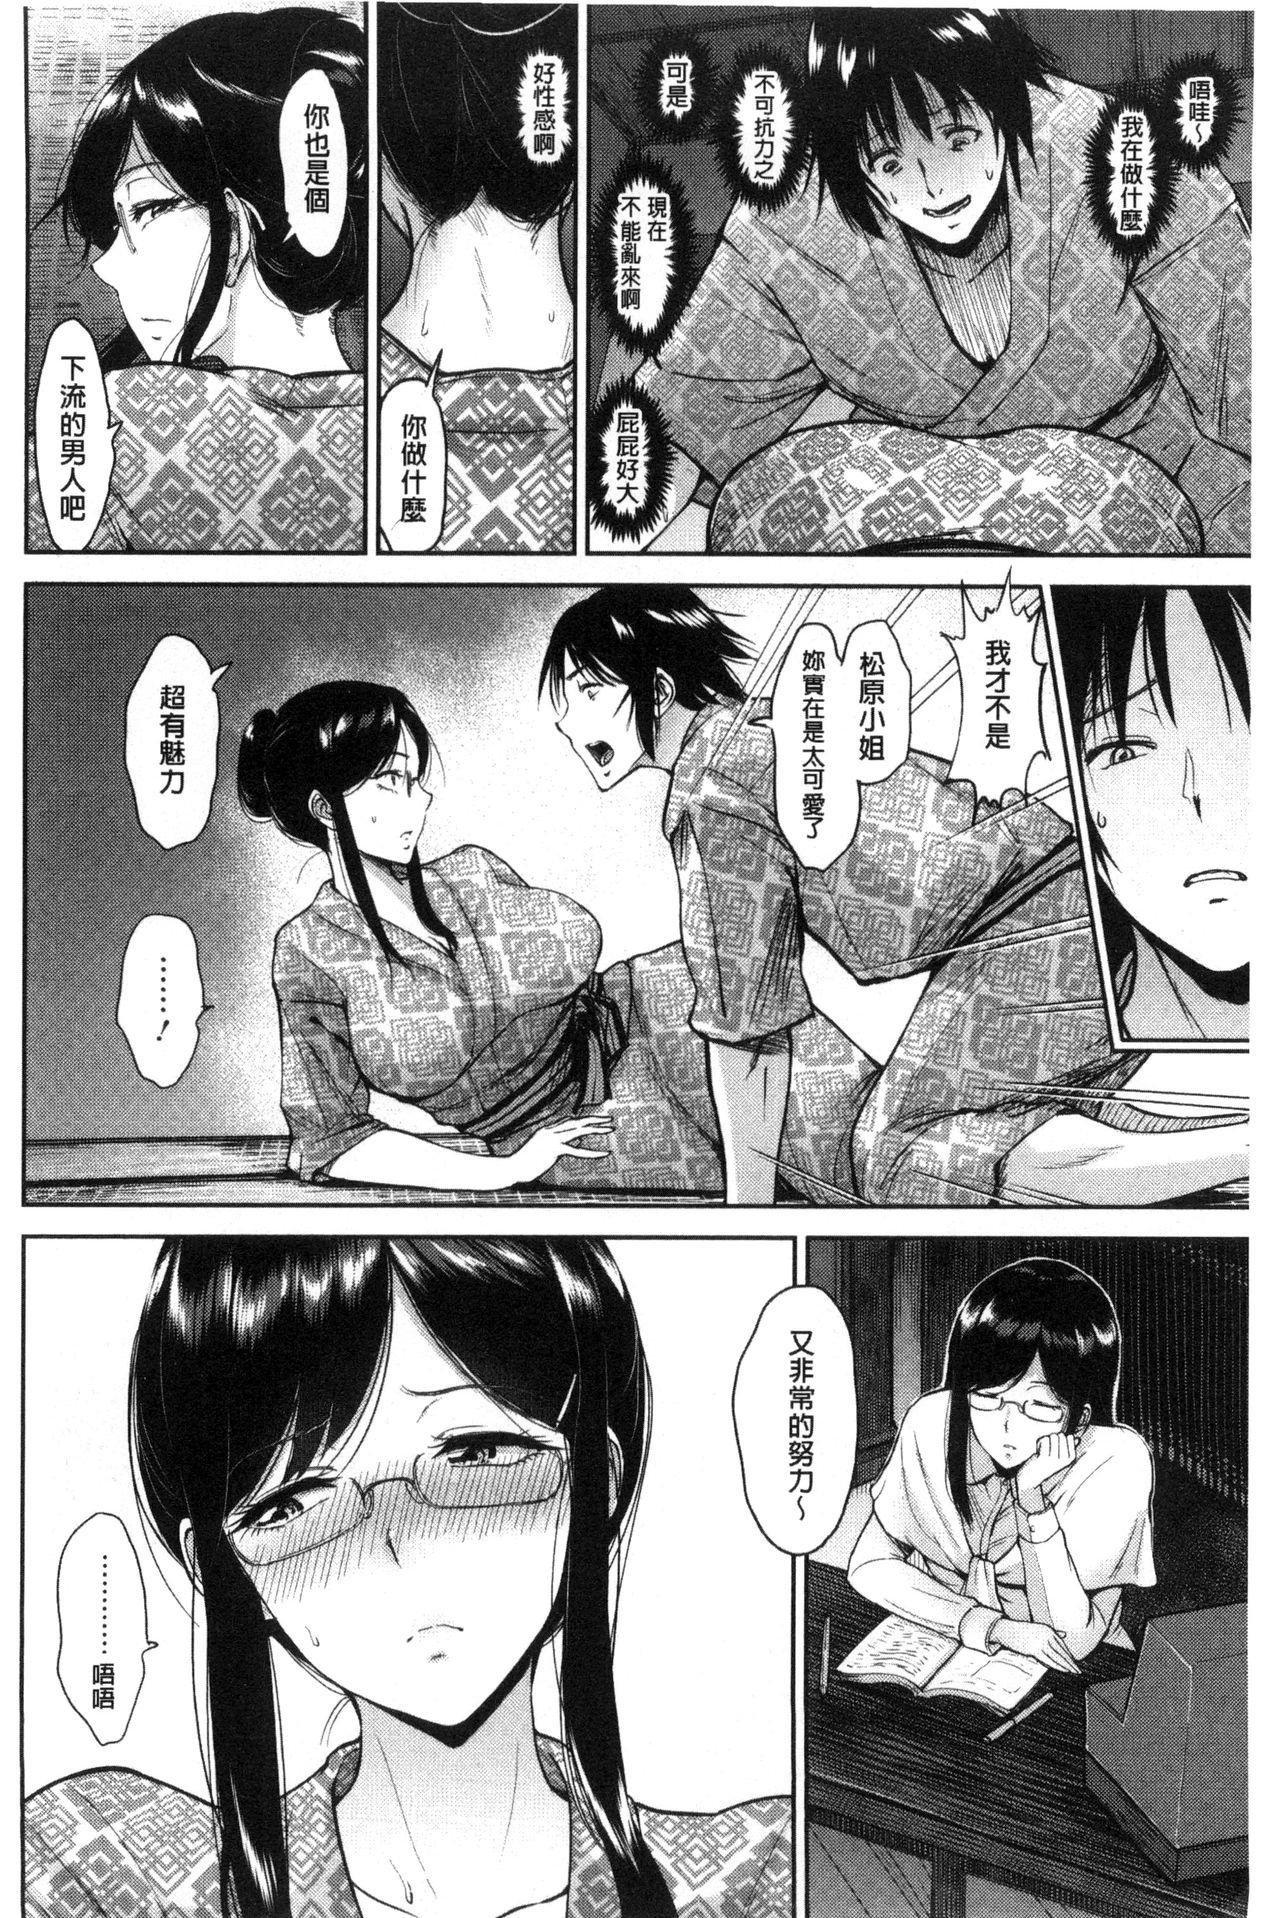 Kimi o Sasou Uzuki Ana Page 51 Of 208 hentai haven, Kimi o Sasou ...